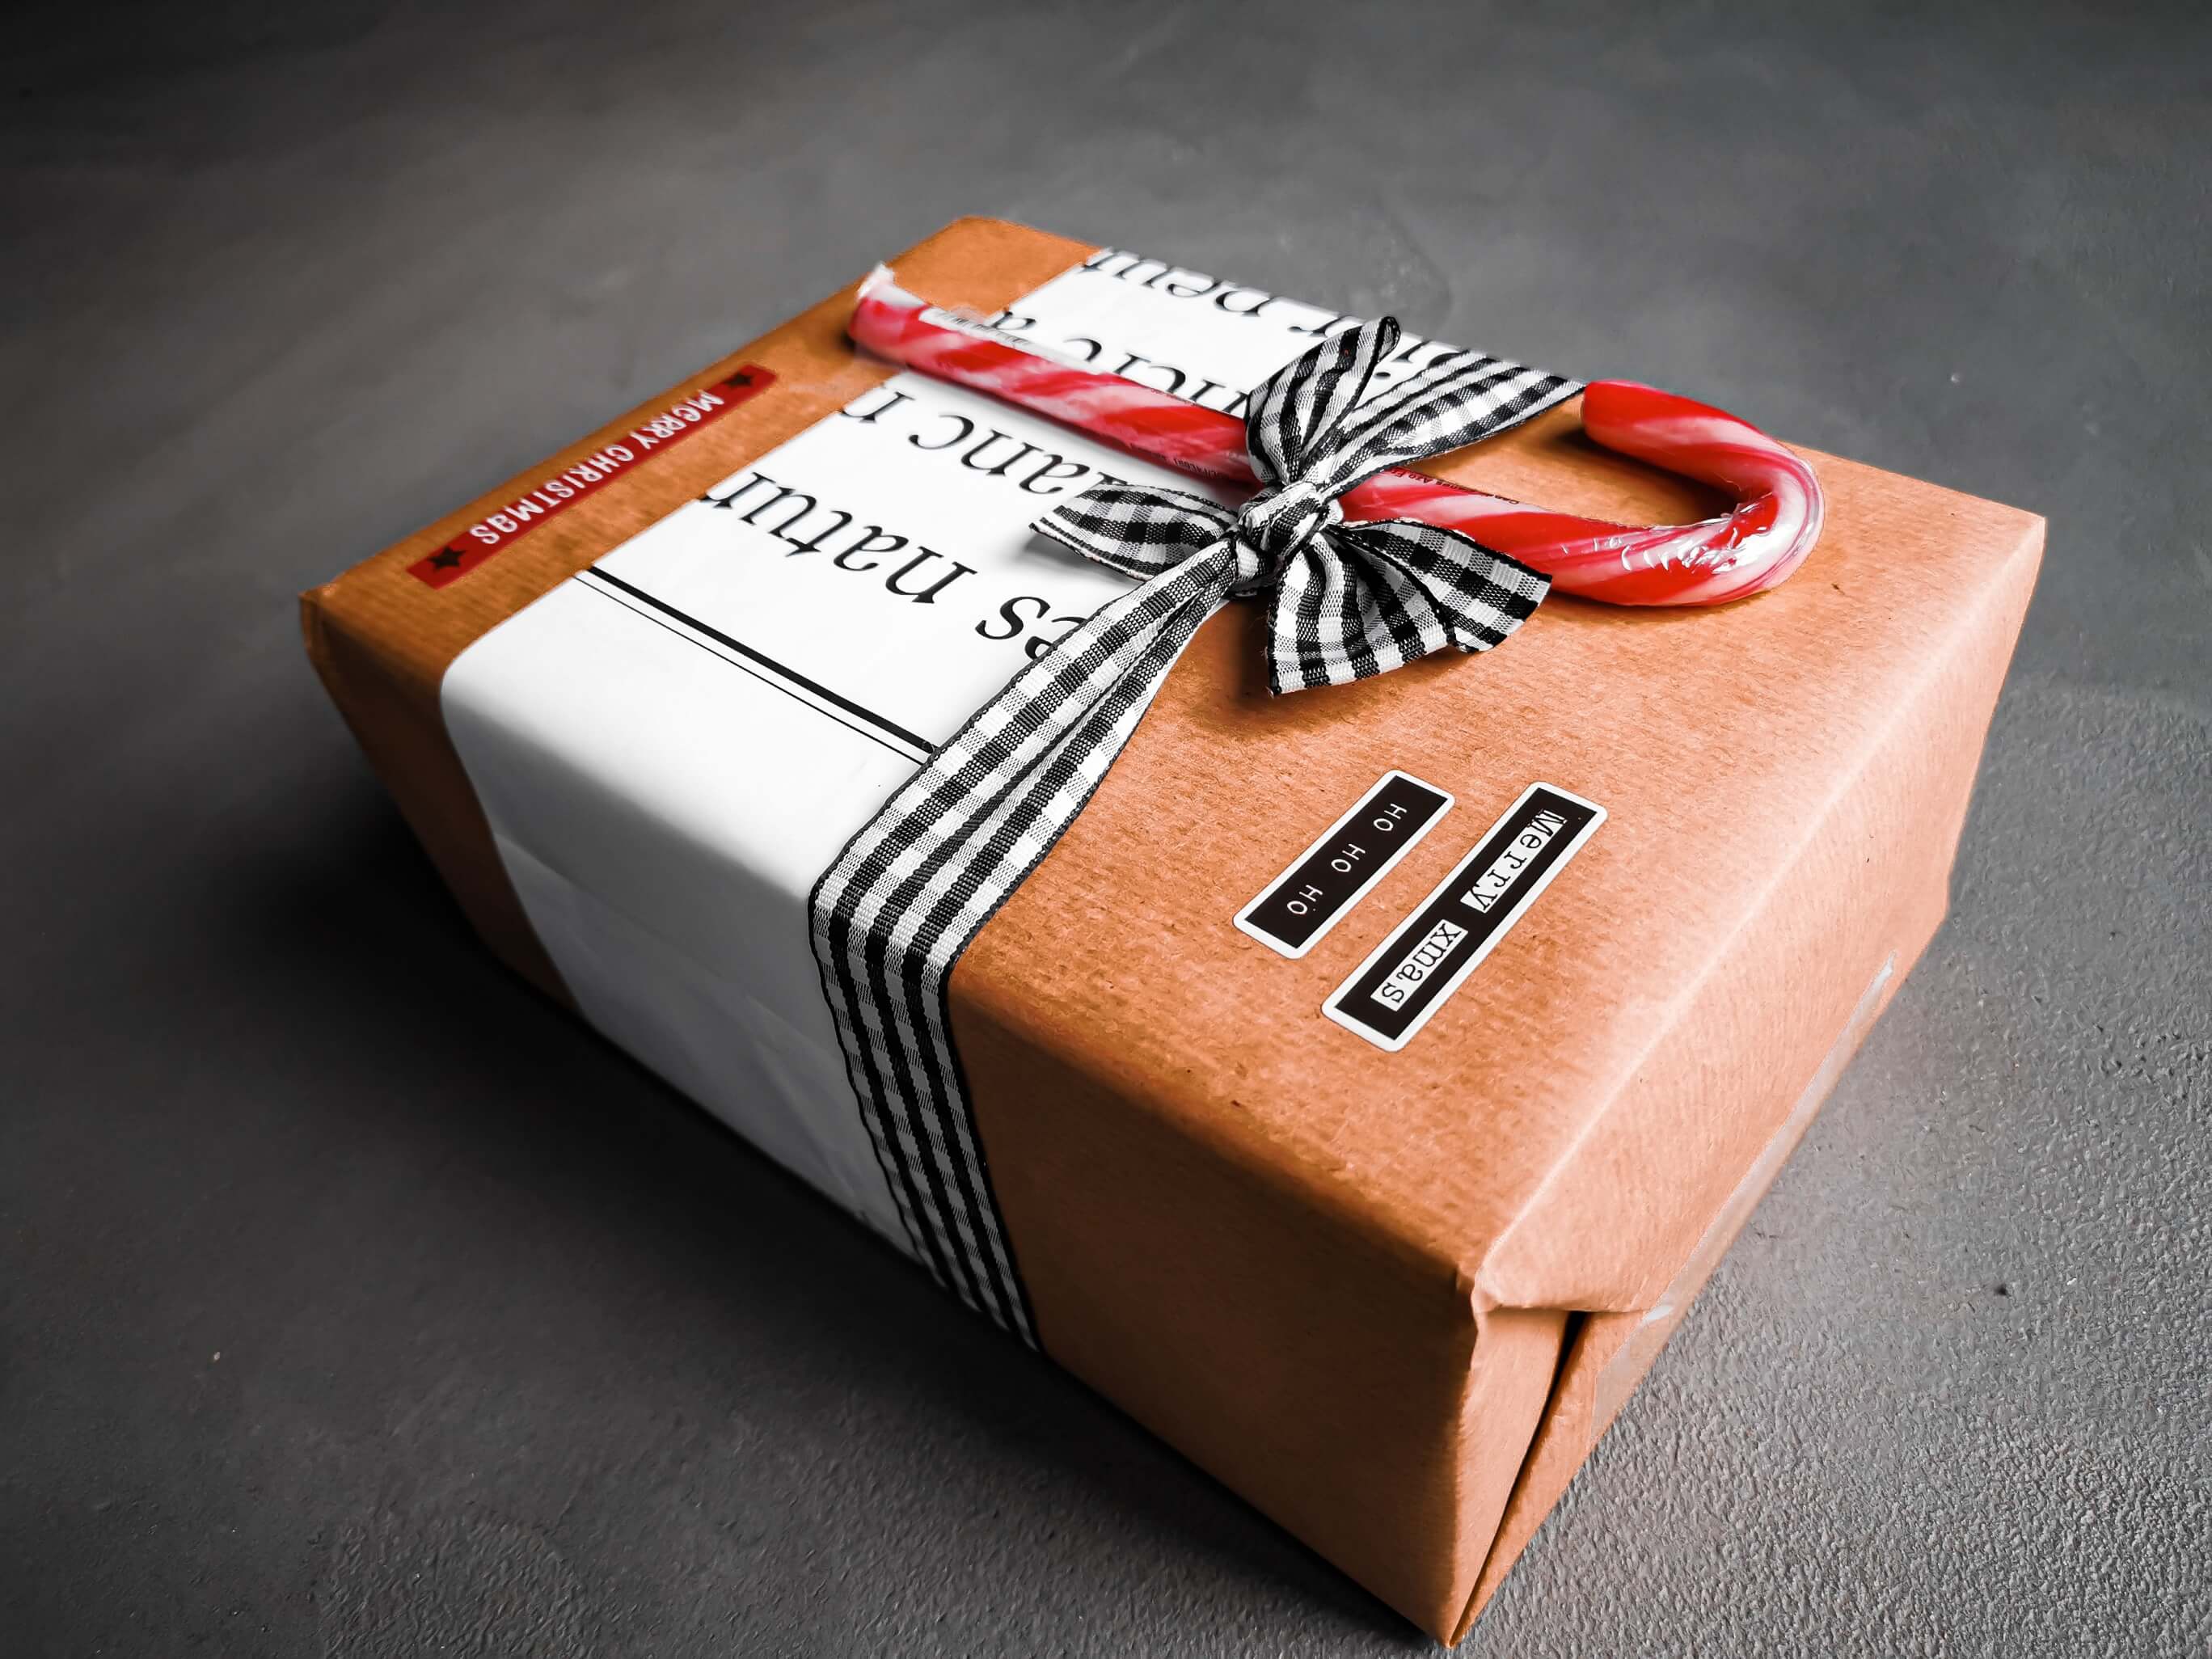 IMG 20191214 093407 resized 20191215 054324429 1 - Geschenke verpacken: 11 kreative Tipps zum Selbermachen